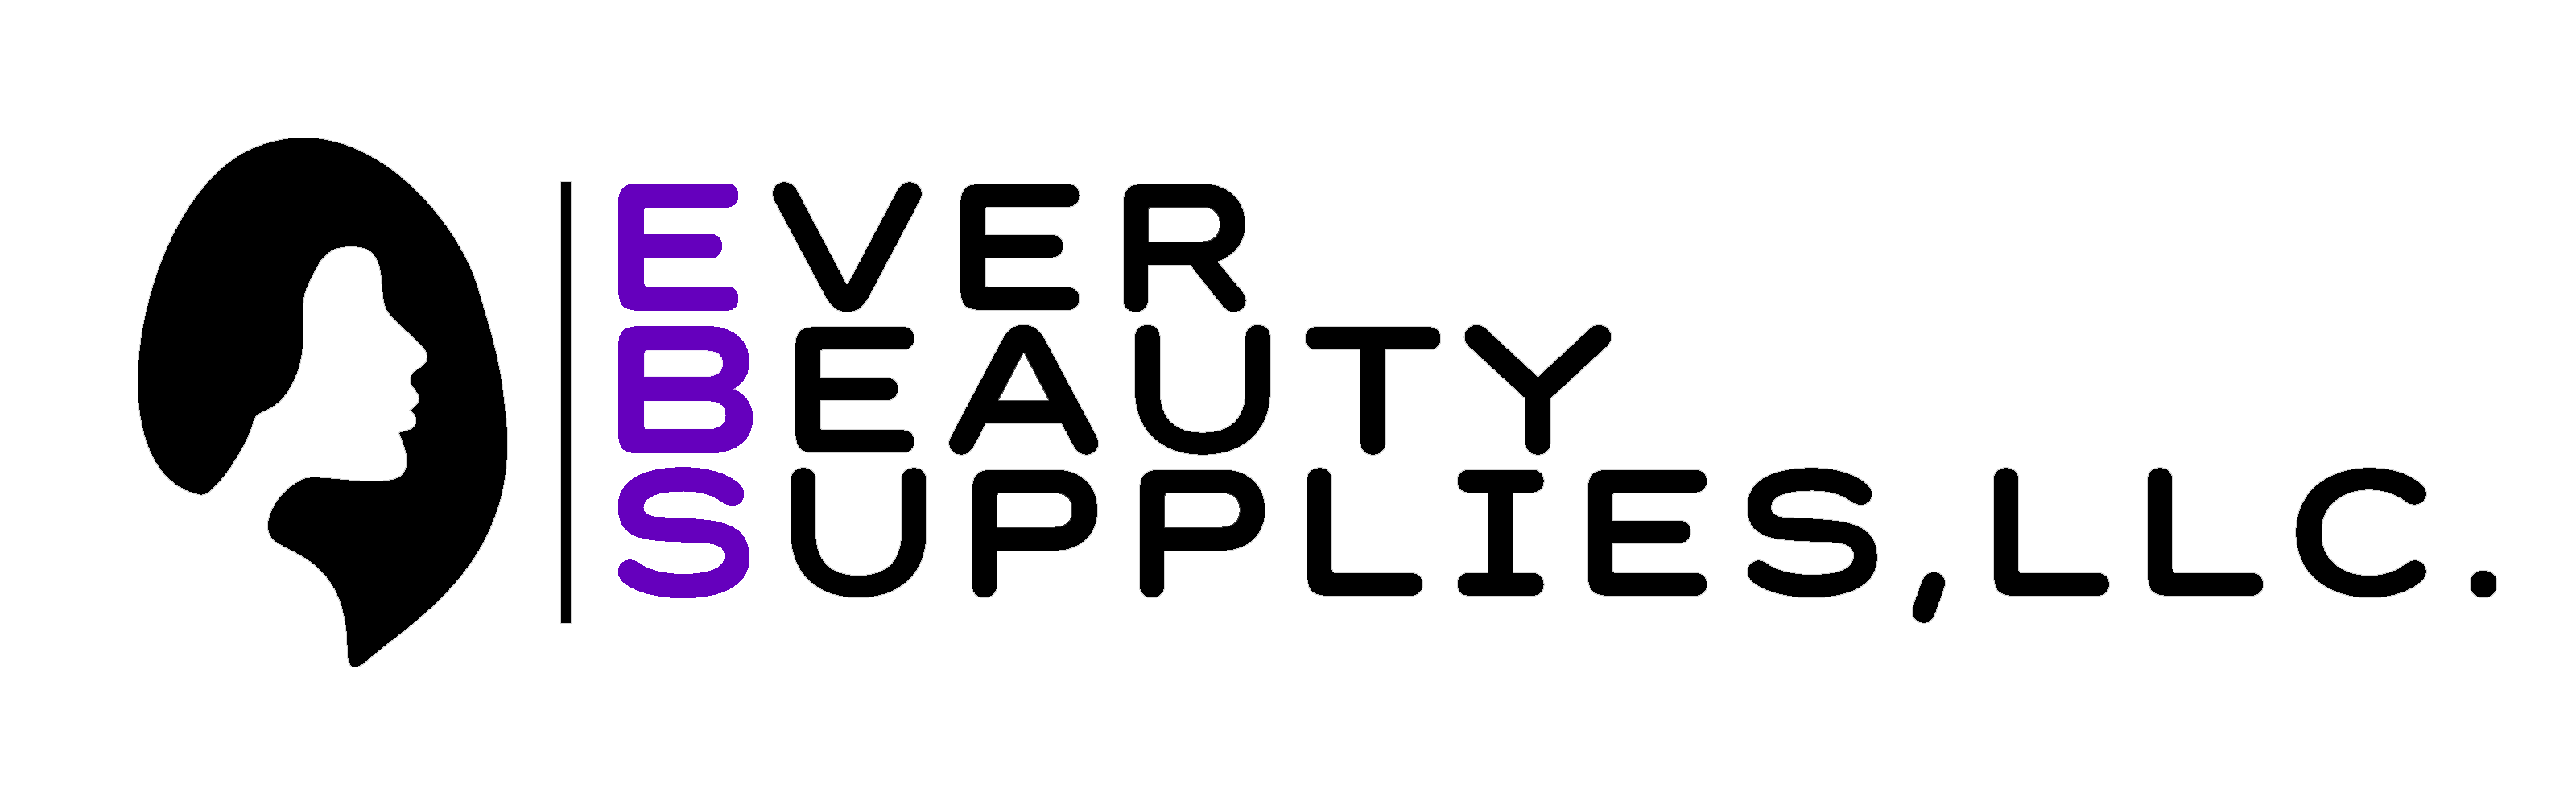 Ever Beauty Supplies